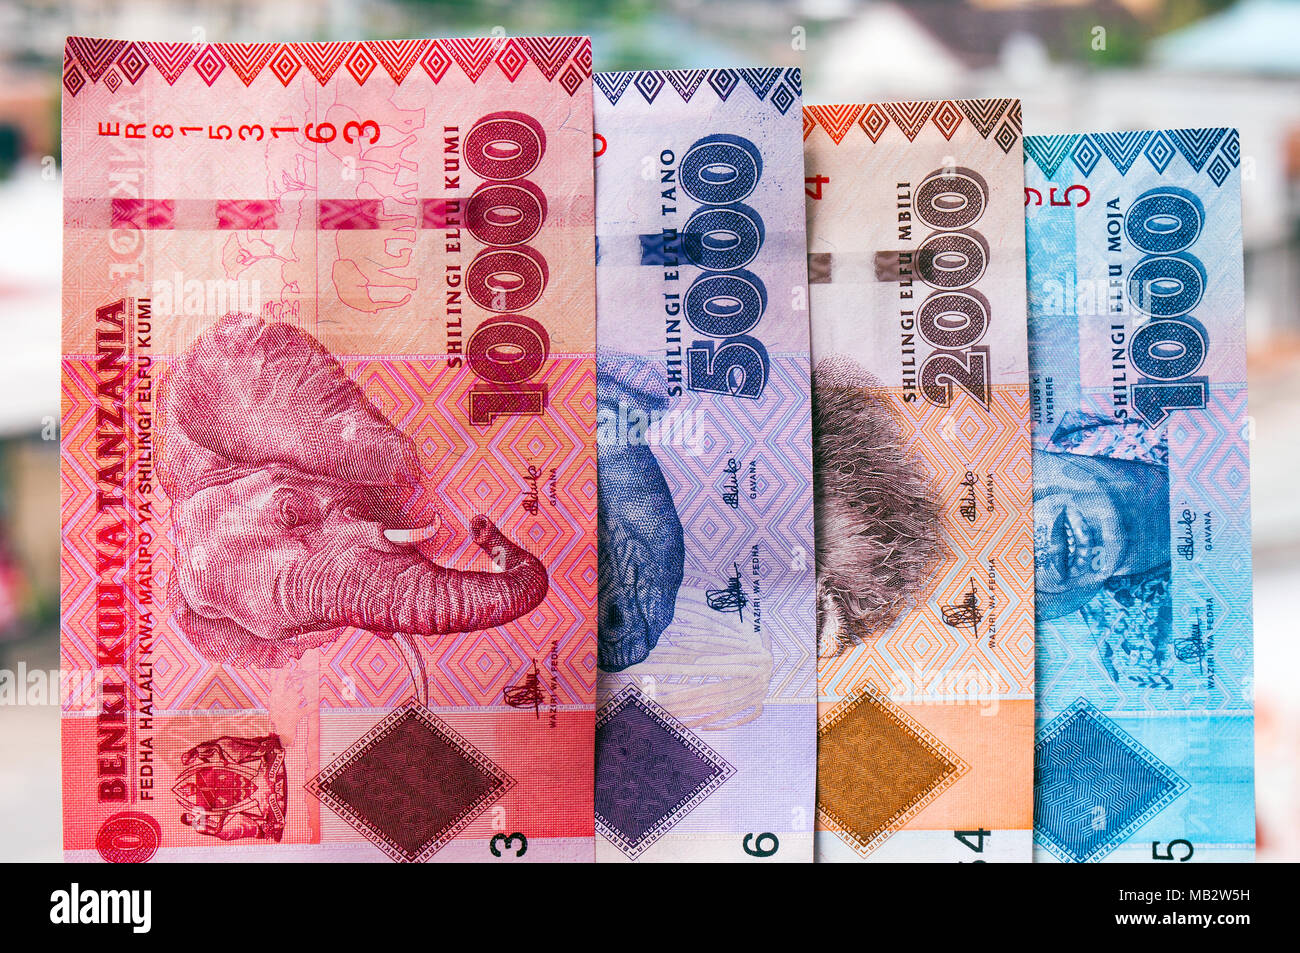 Los cuatro disponibles billetes de Tanzania en el denonmination de chelines tanzanos: 3.048, 5.000, 2.000 y 1.000, fotografiado en la localización de da Foto de stock